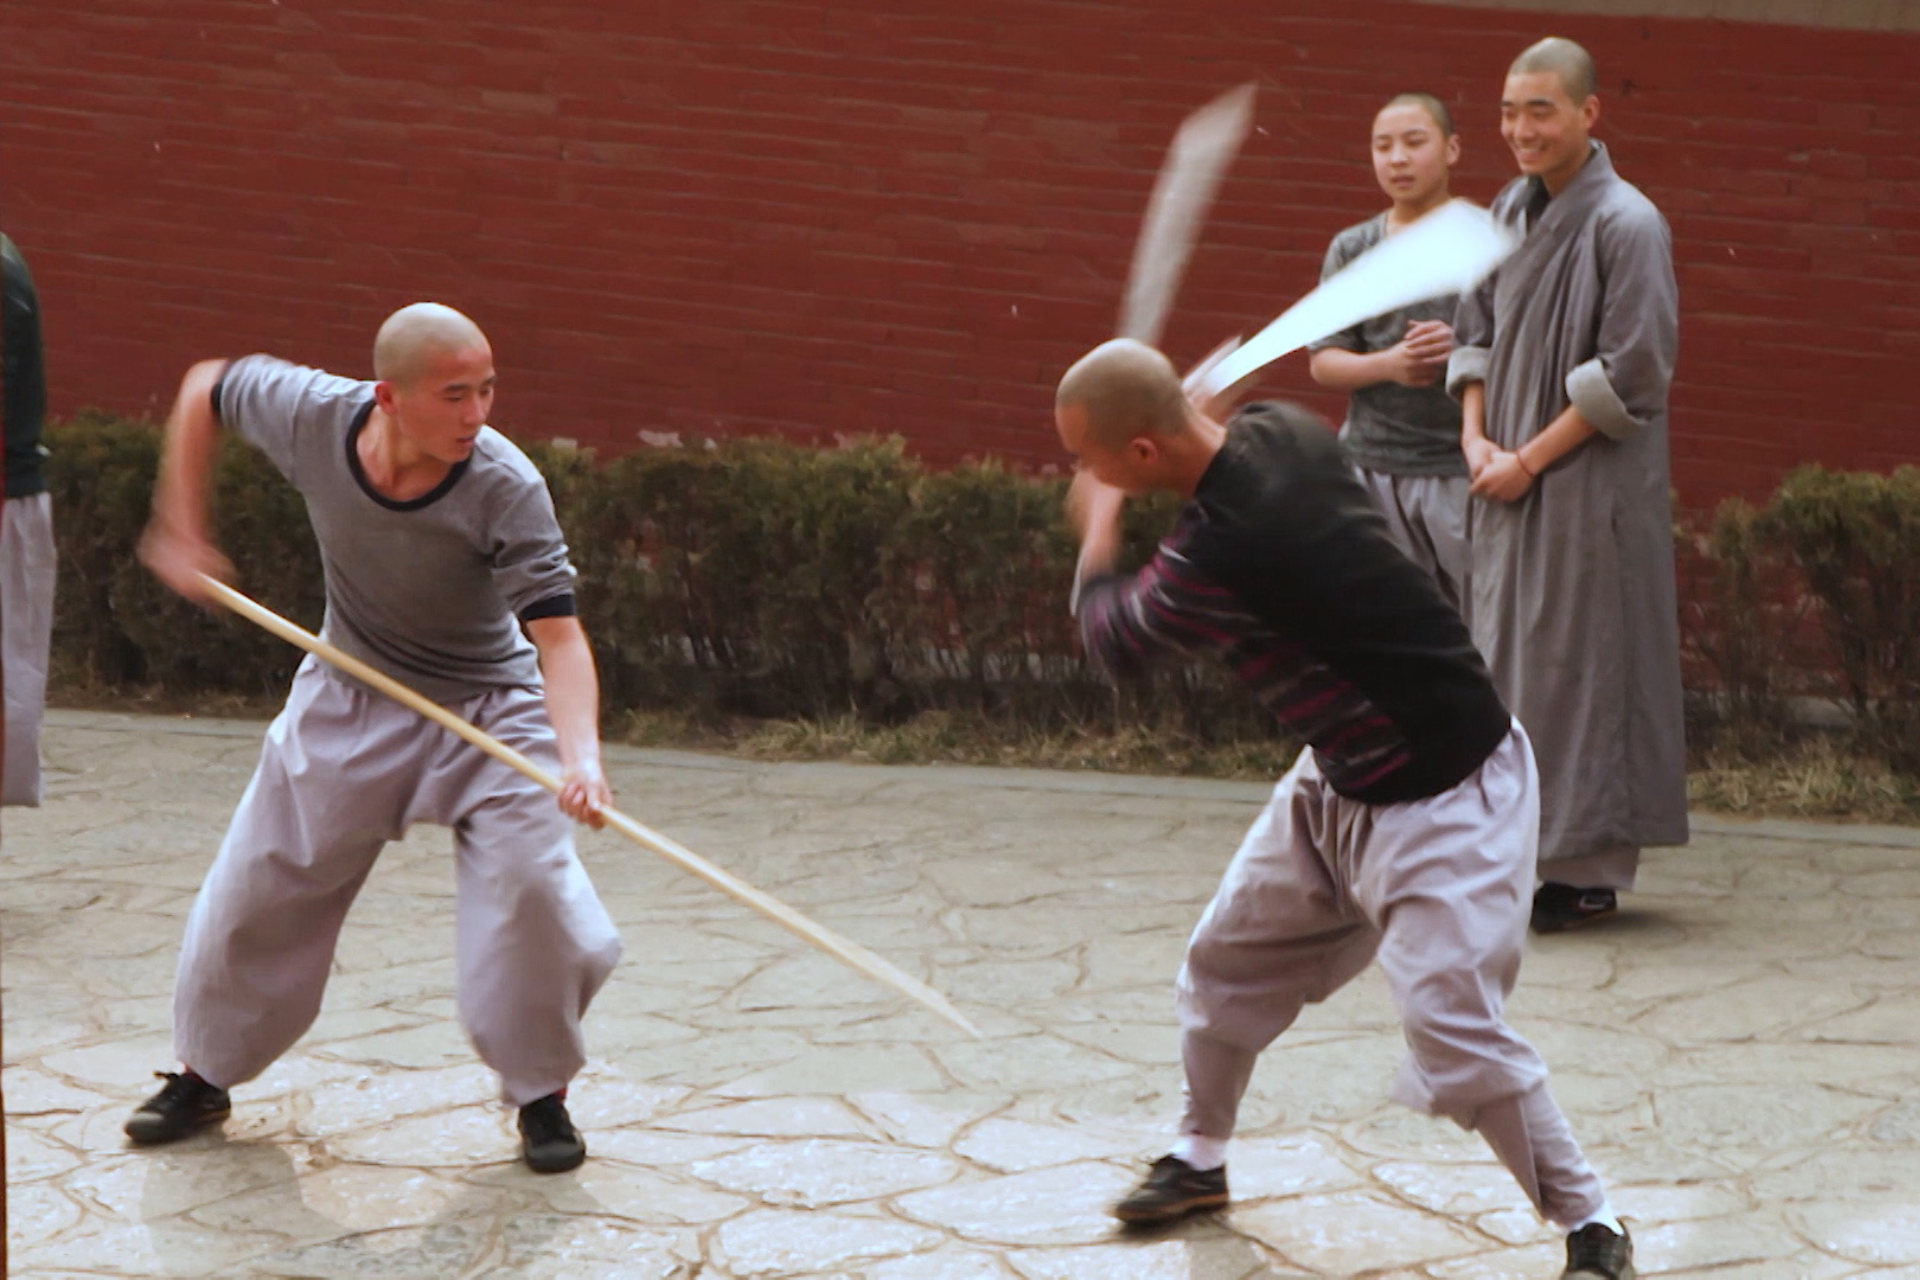 Dos hombres practicando artes marciales, uno sujeta un palo y el otro una espada